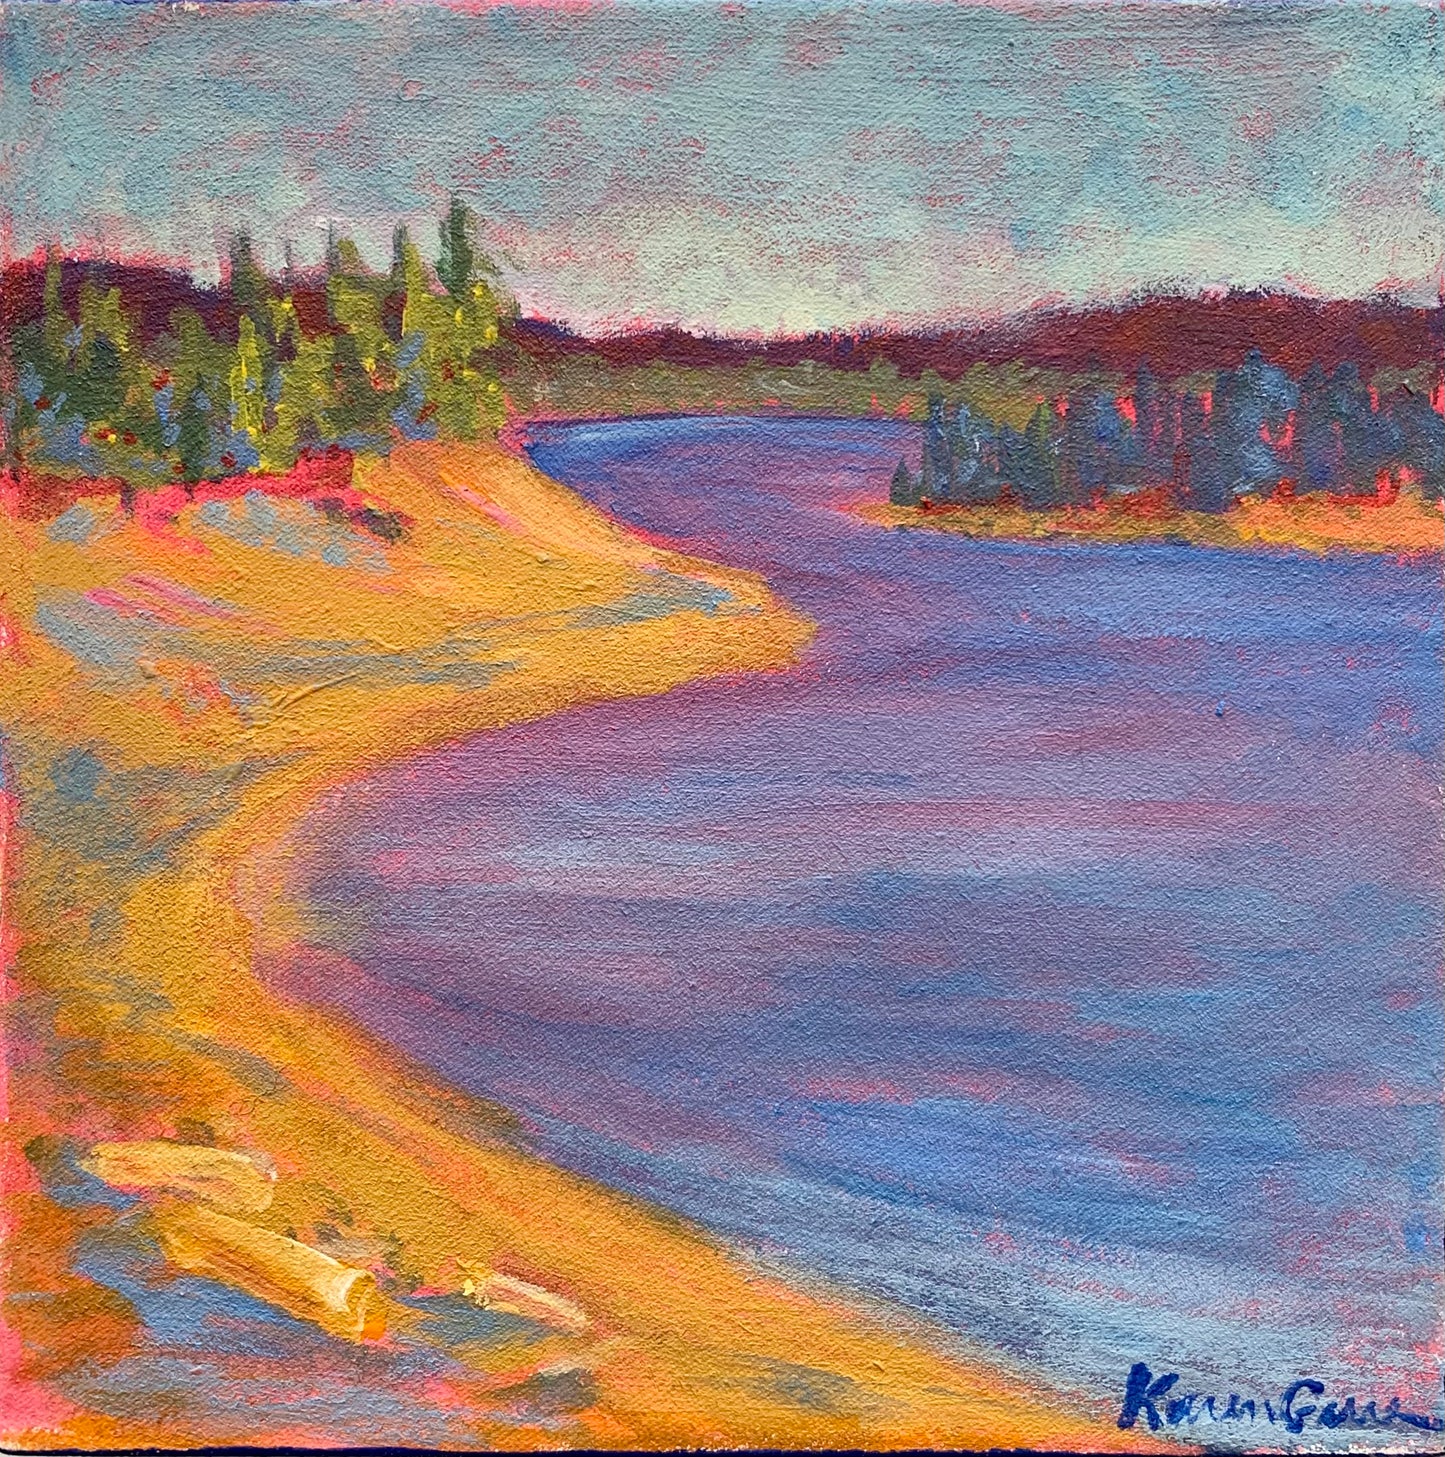 KarenG- Painting- "Hebgen Lake Shore" 8x8